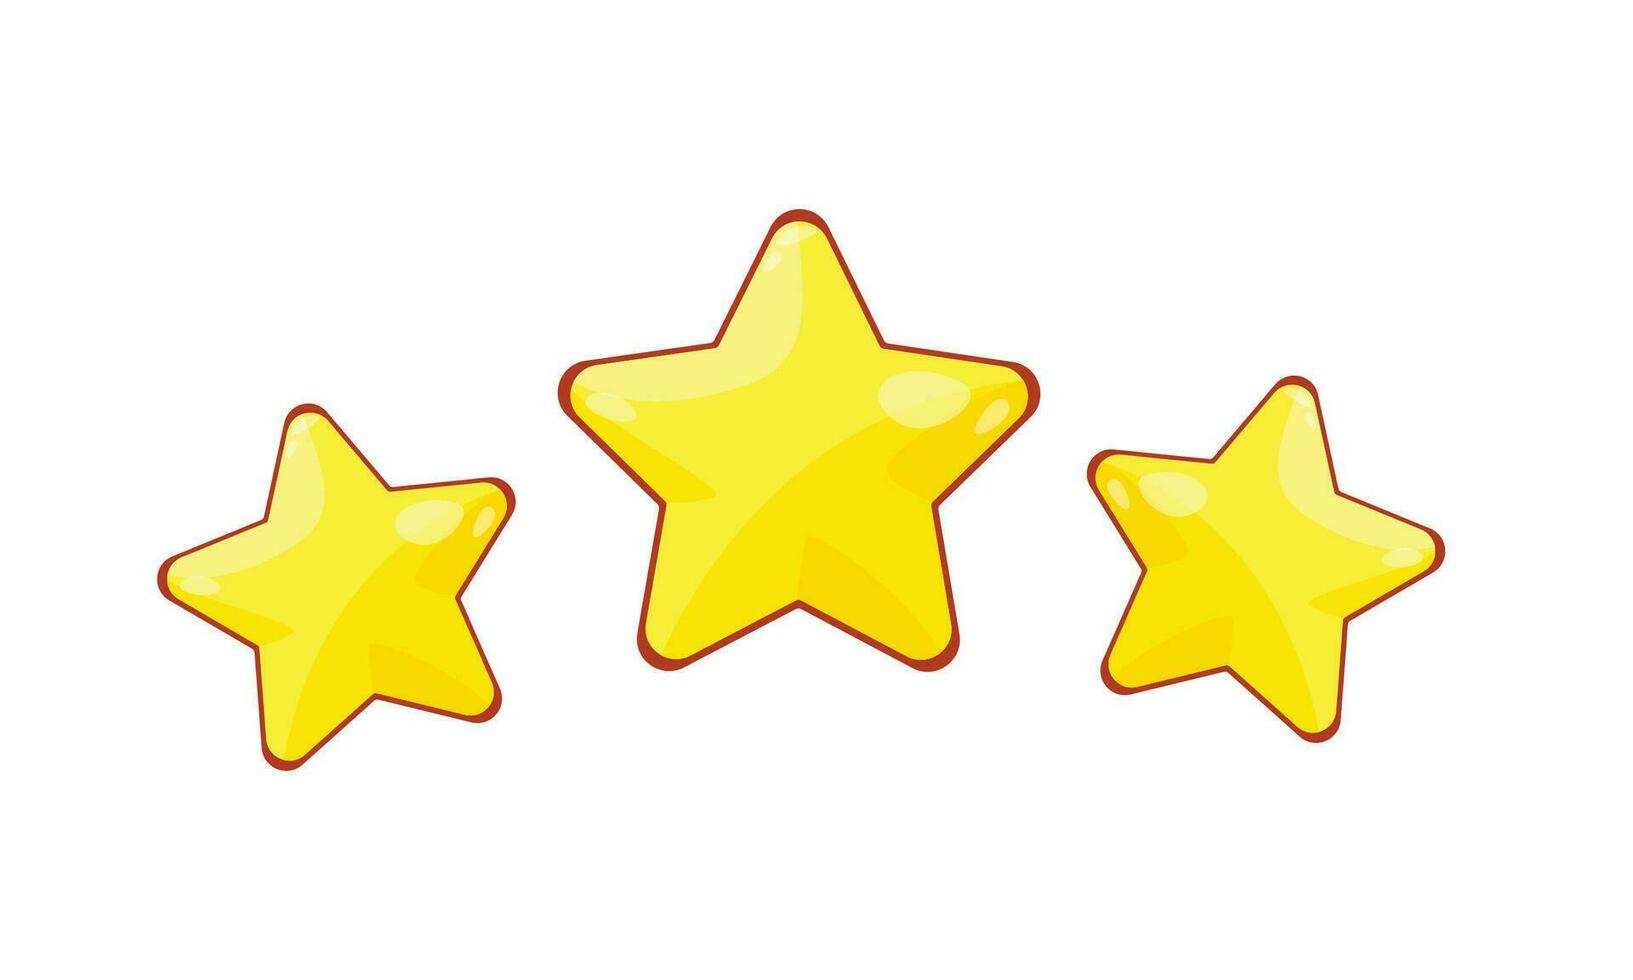 vector drie sterren klant Product beoordeling recensie